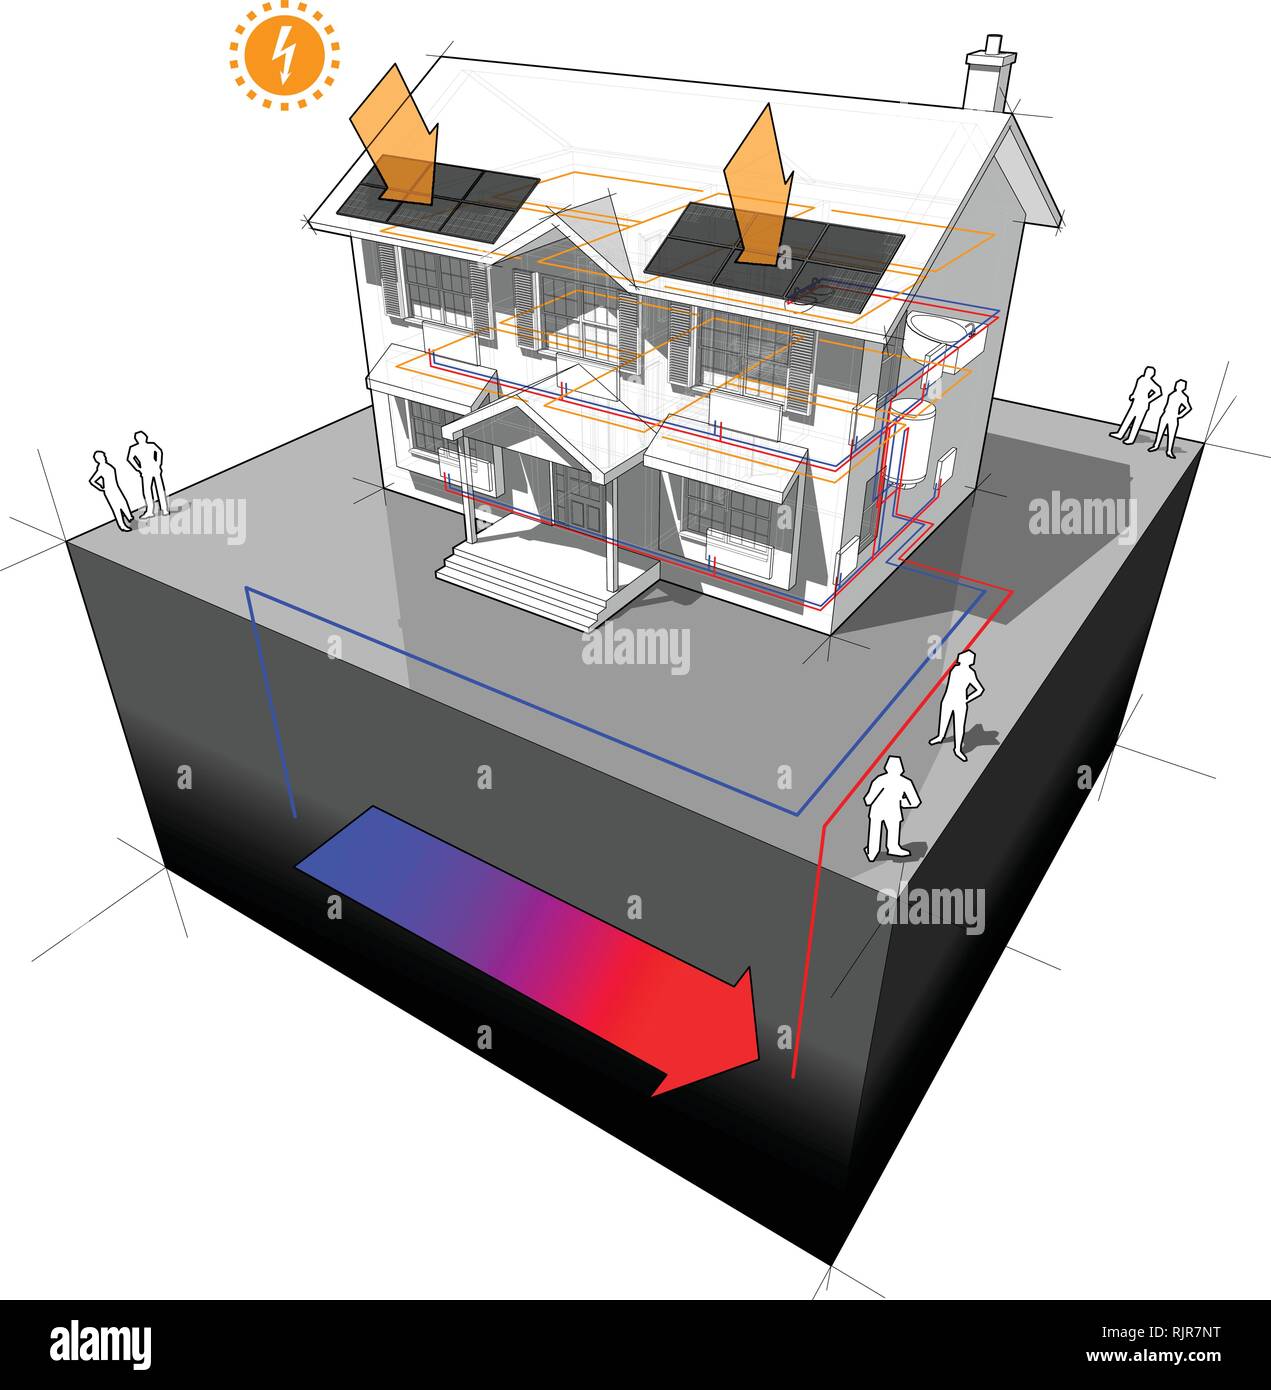 Schema di una classica casa coloniale con fonte di massa pompa di calore come fonte di energia per il riscaldamento a radiatori e con pannelli fotovoltaici sul tetto Illustrazione Vettoriale